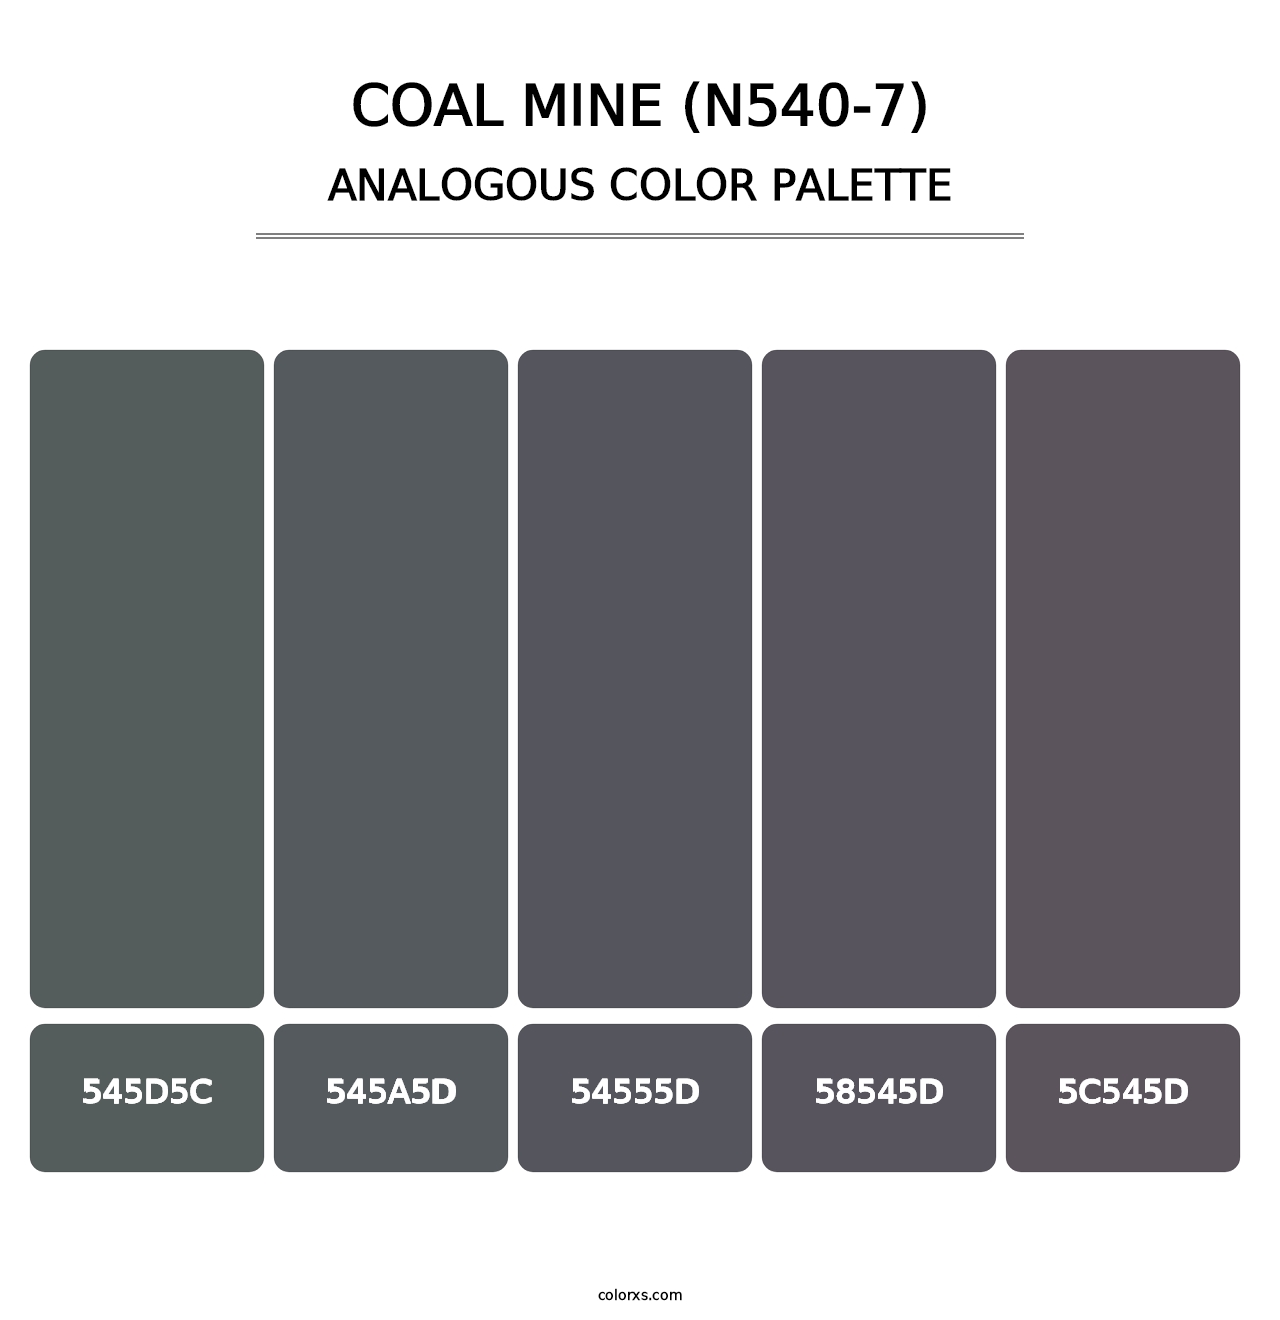 Coal Mine (N540-7) - Analogous Color Palette